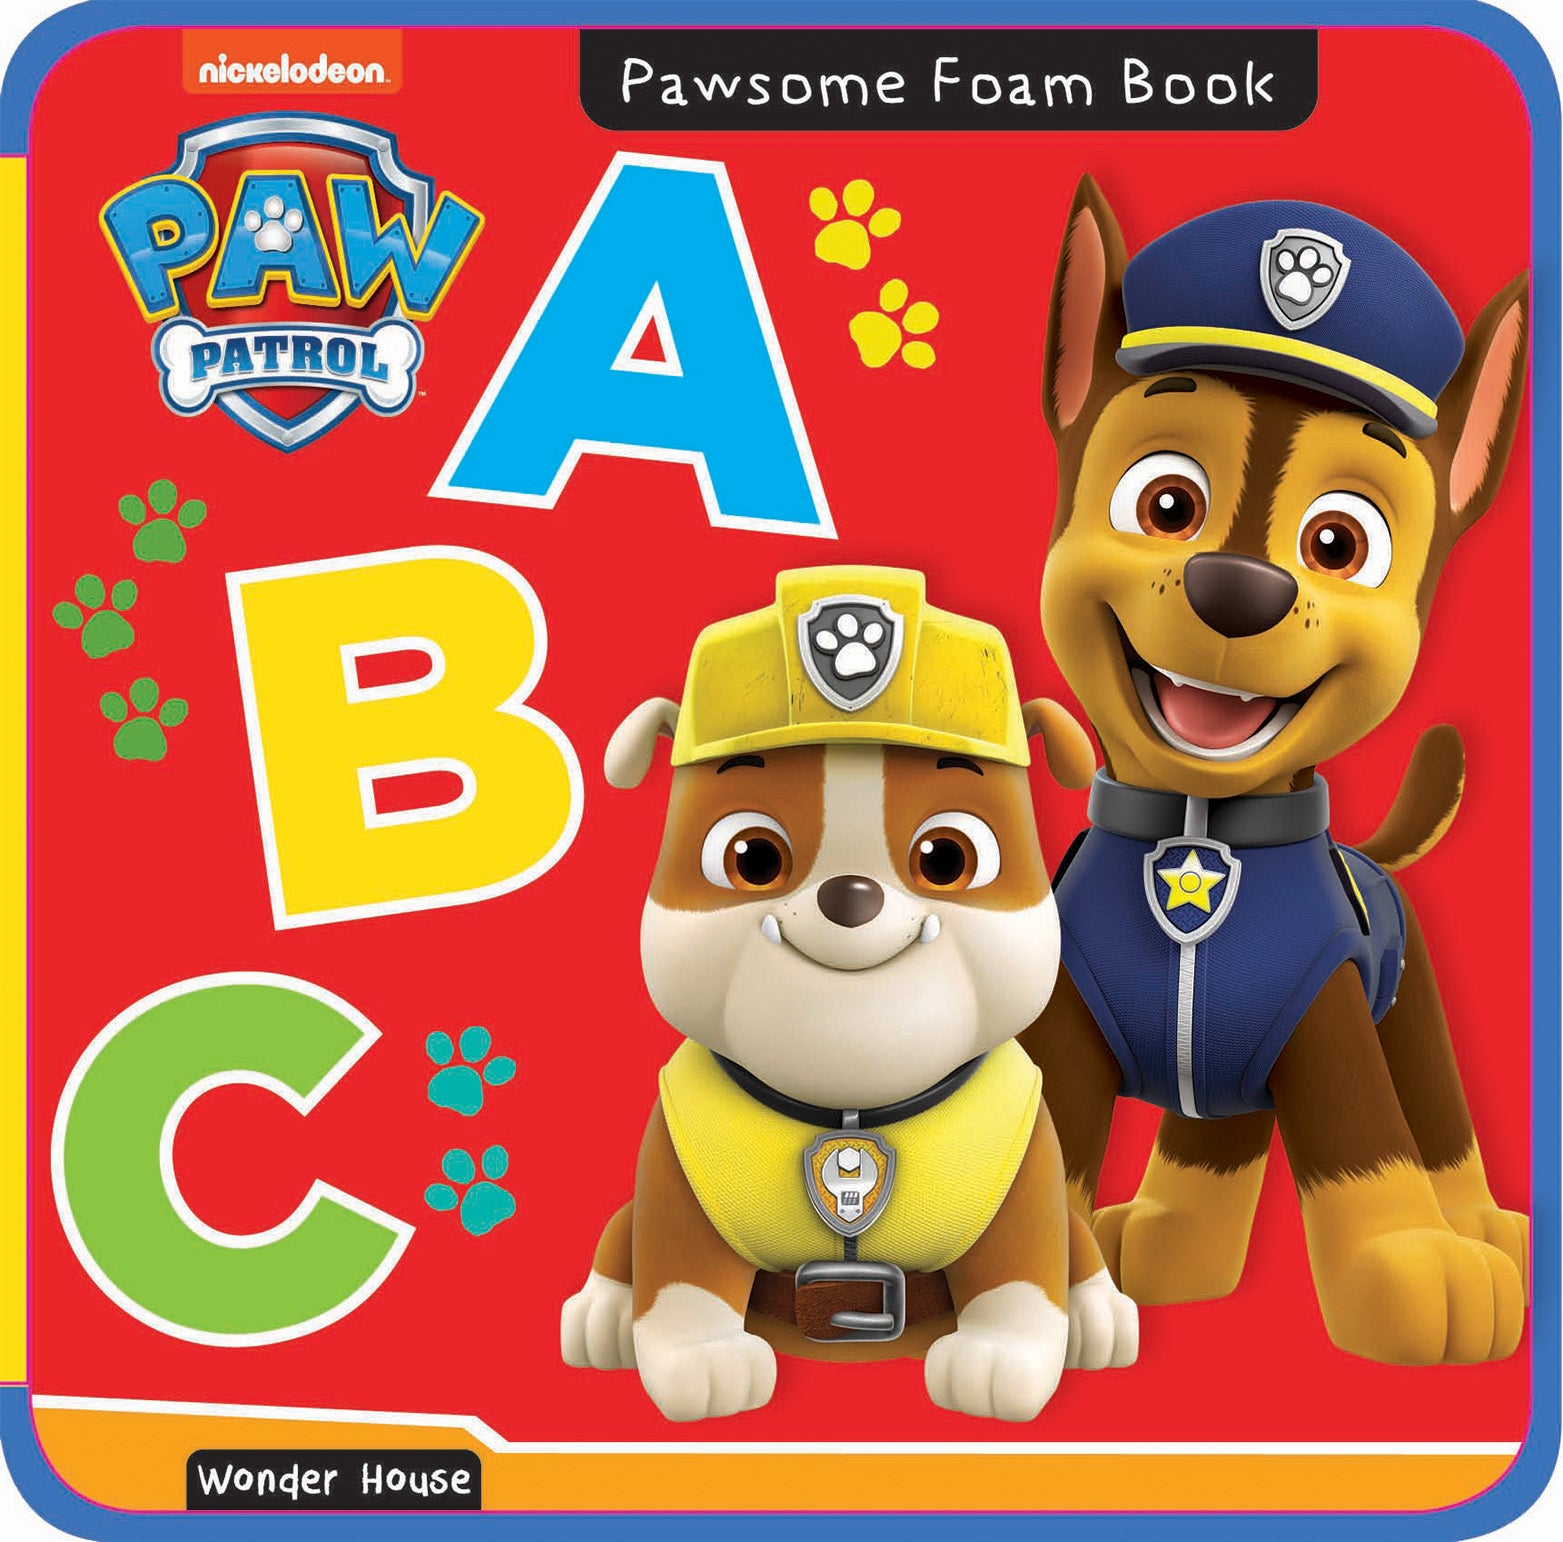 Pawsome Foam Books - ABC : Paw Patrol